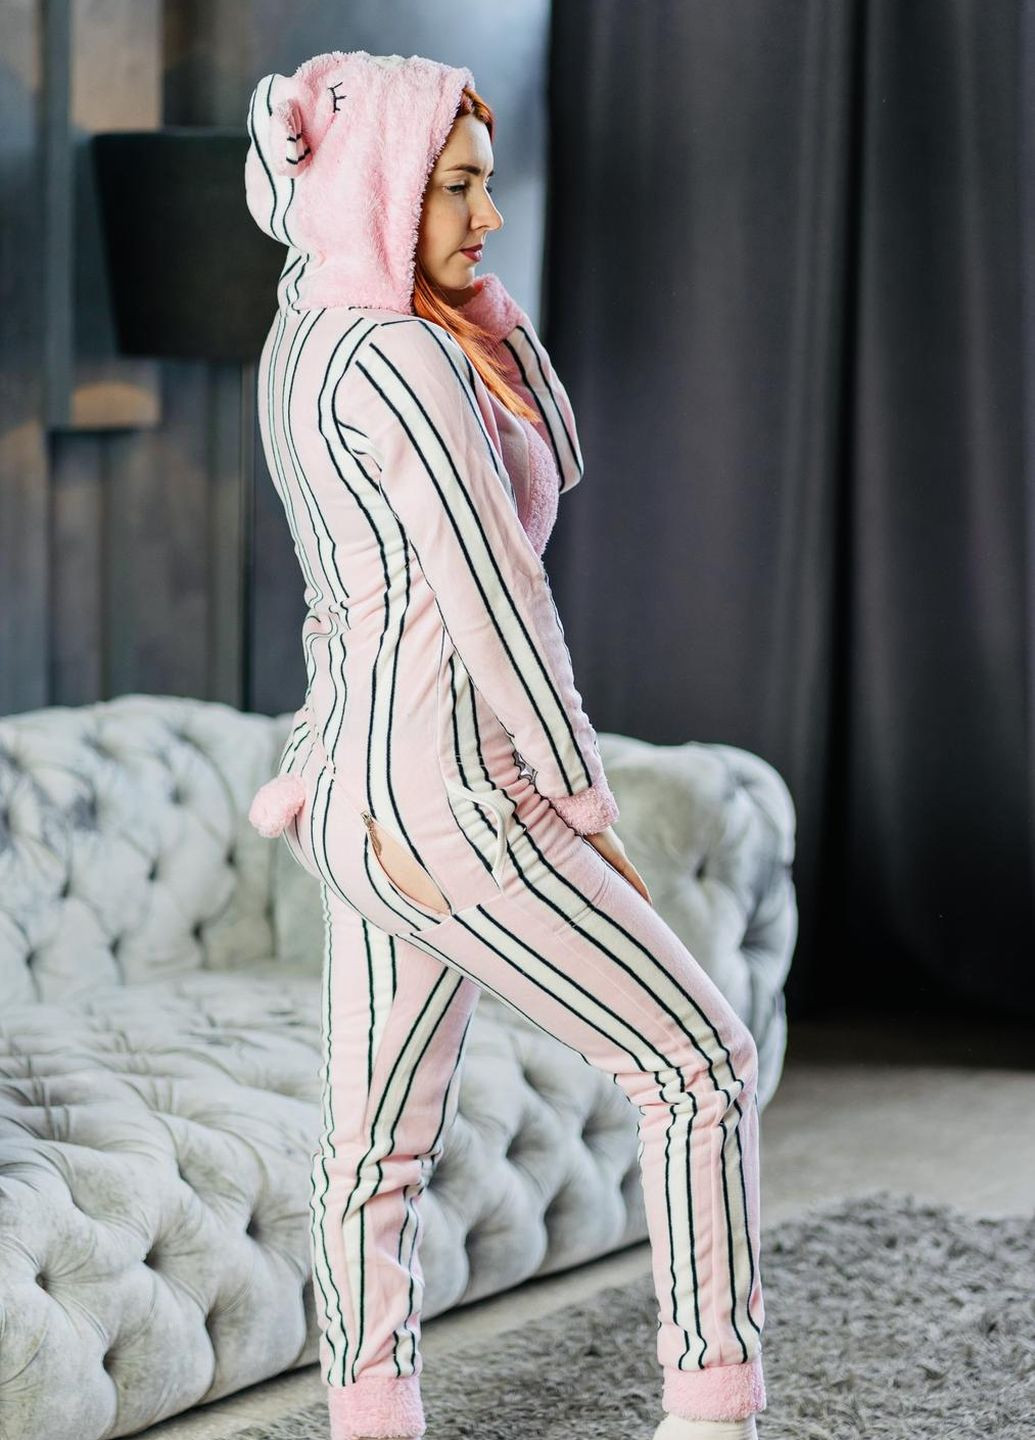 Персиковая зимняя пижама комбинезон Pijamoni Попожама смужка (комбінезон з карманом на попі, піджамоні) - кигурумі